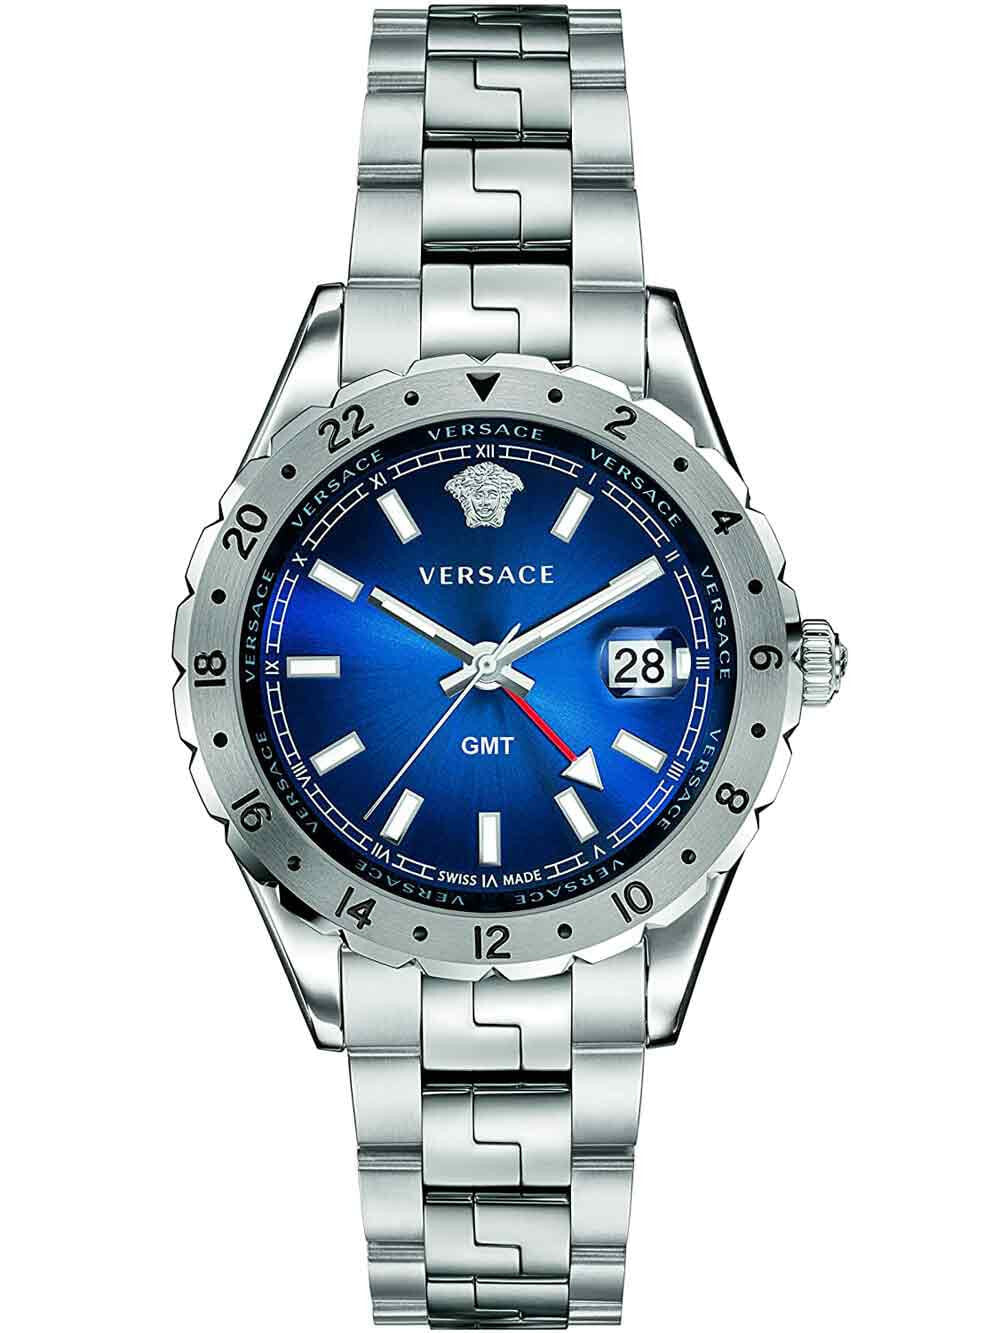 Мужские наручные часы с серебряным браслетом Versace V11010015 Hellenyium GMT mens watch 42mm 5ATM